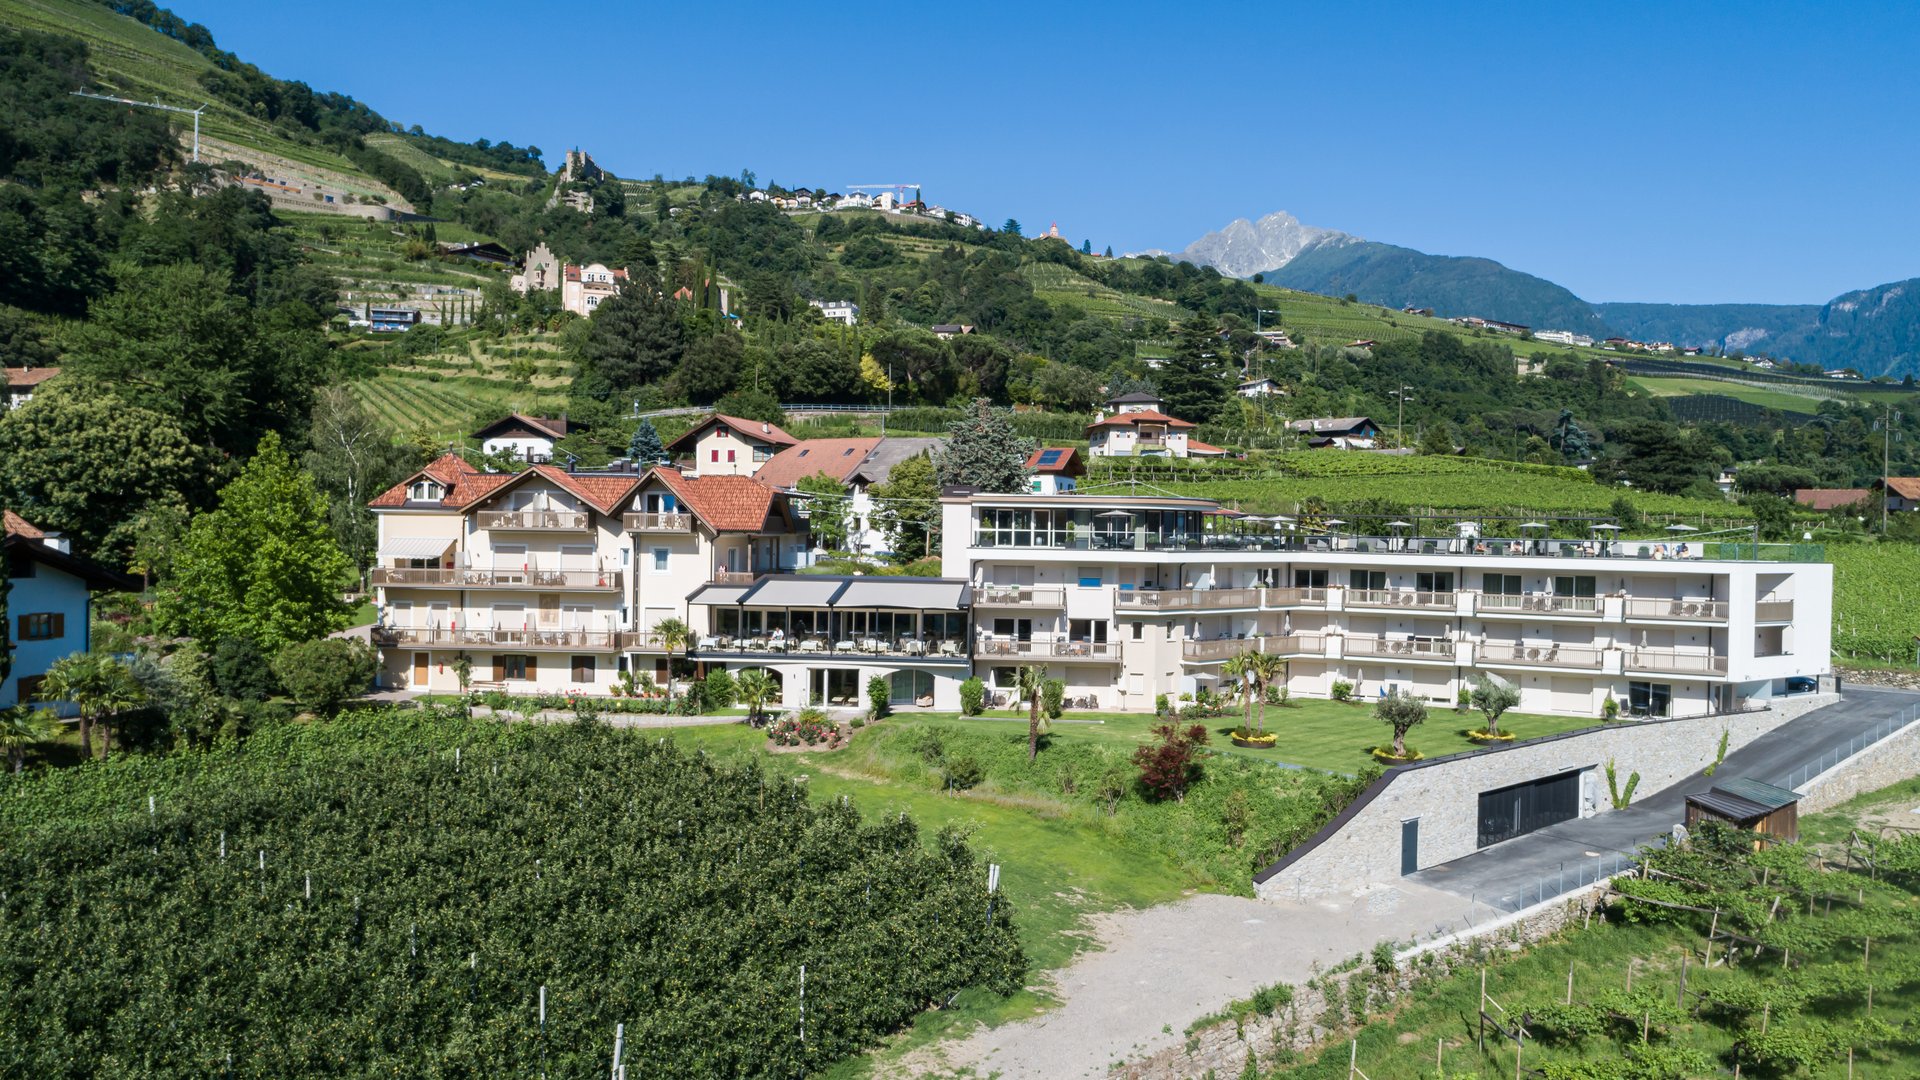 Buchen Sie Ihren Urlaub in Meran, Südtirol